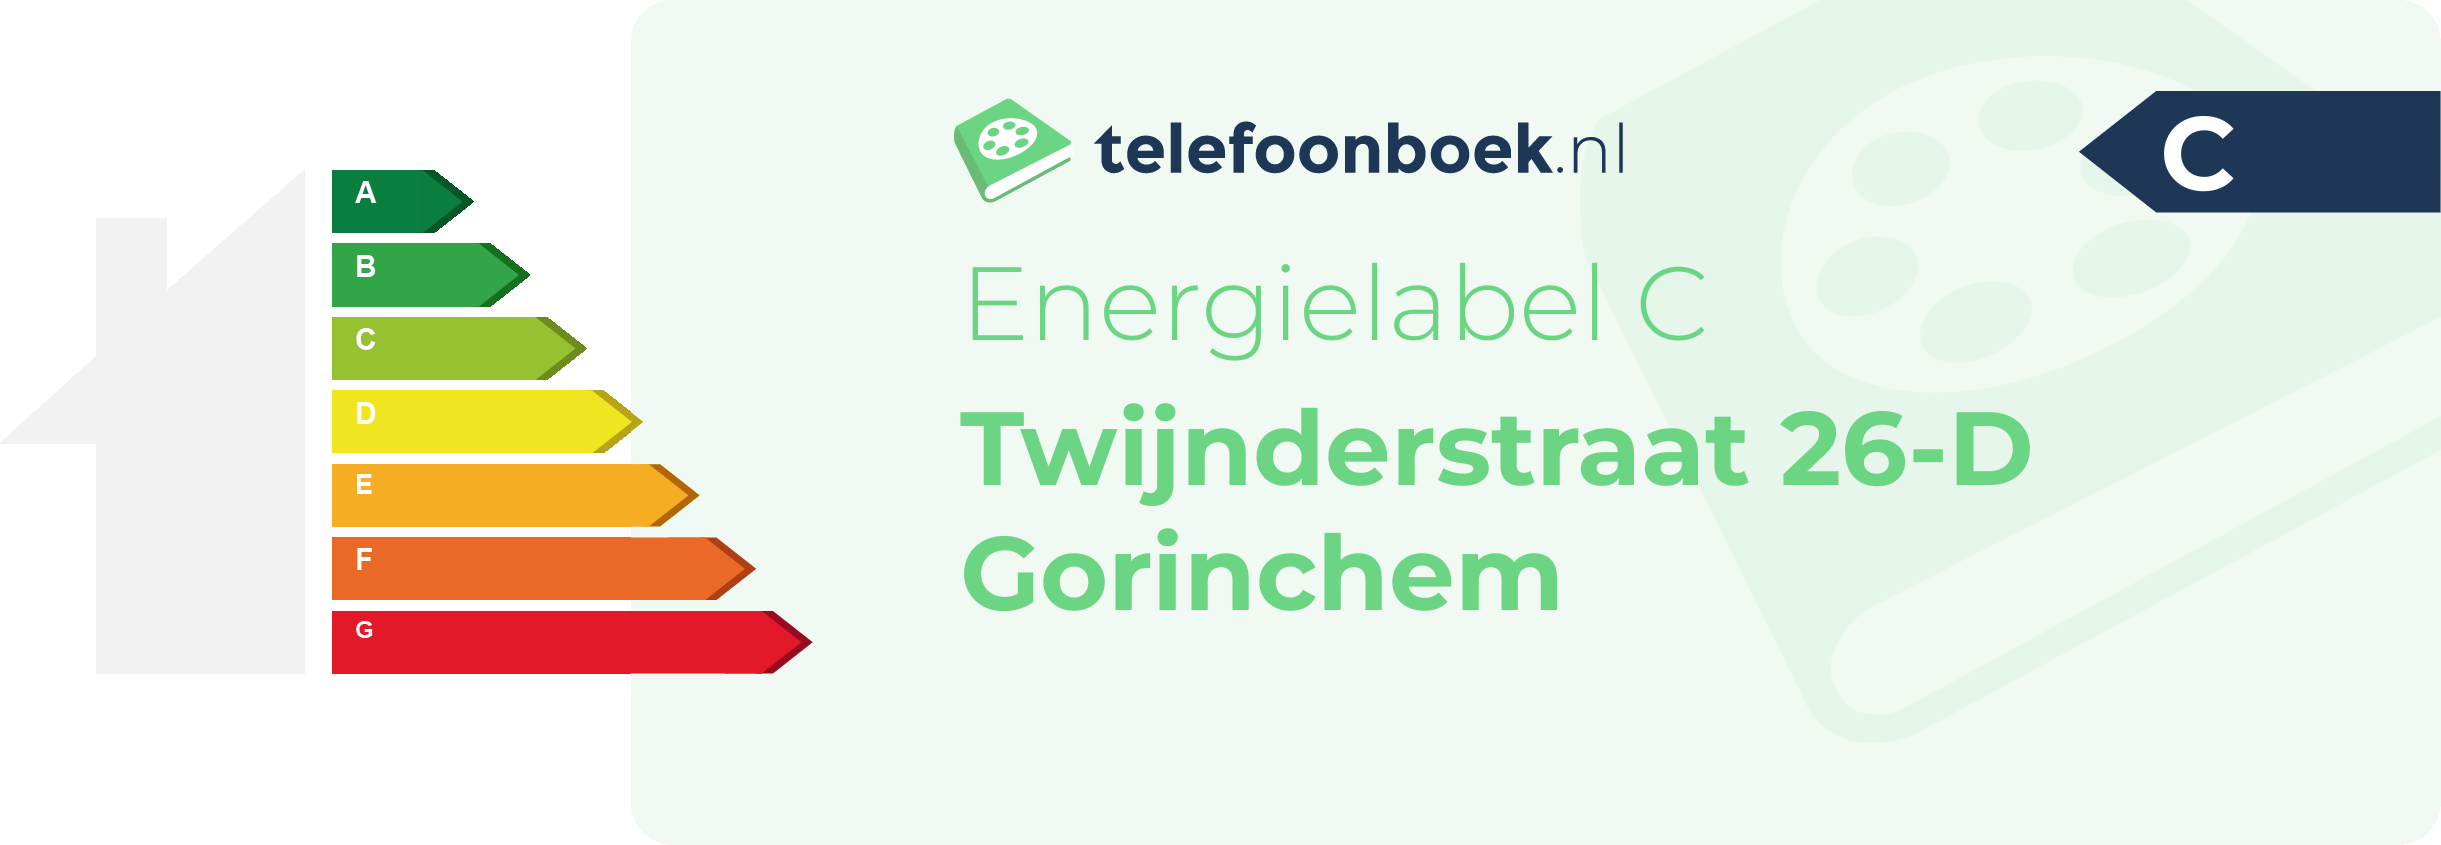 Energielabel Twijnderstraat 26-D Gorinchem